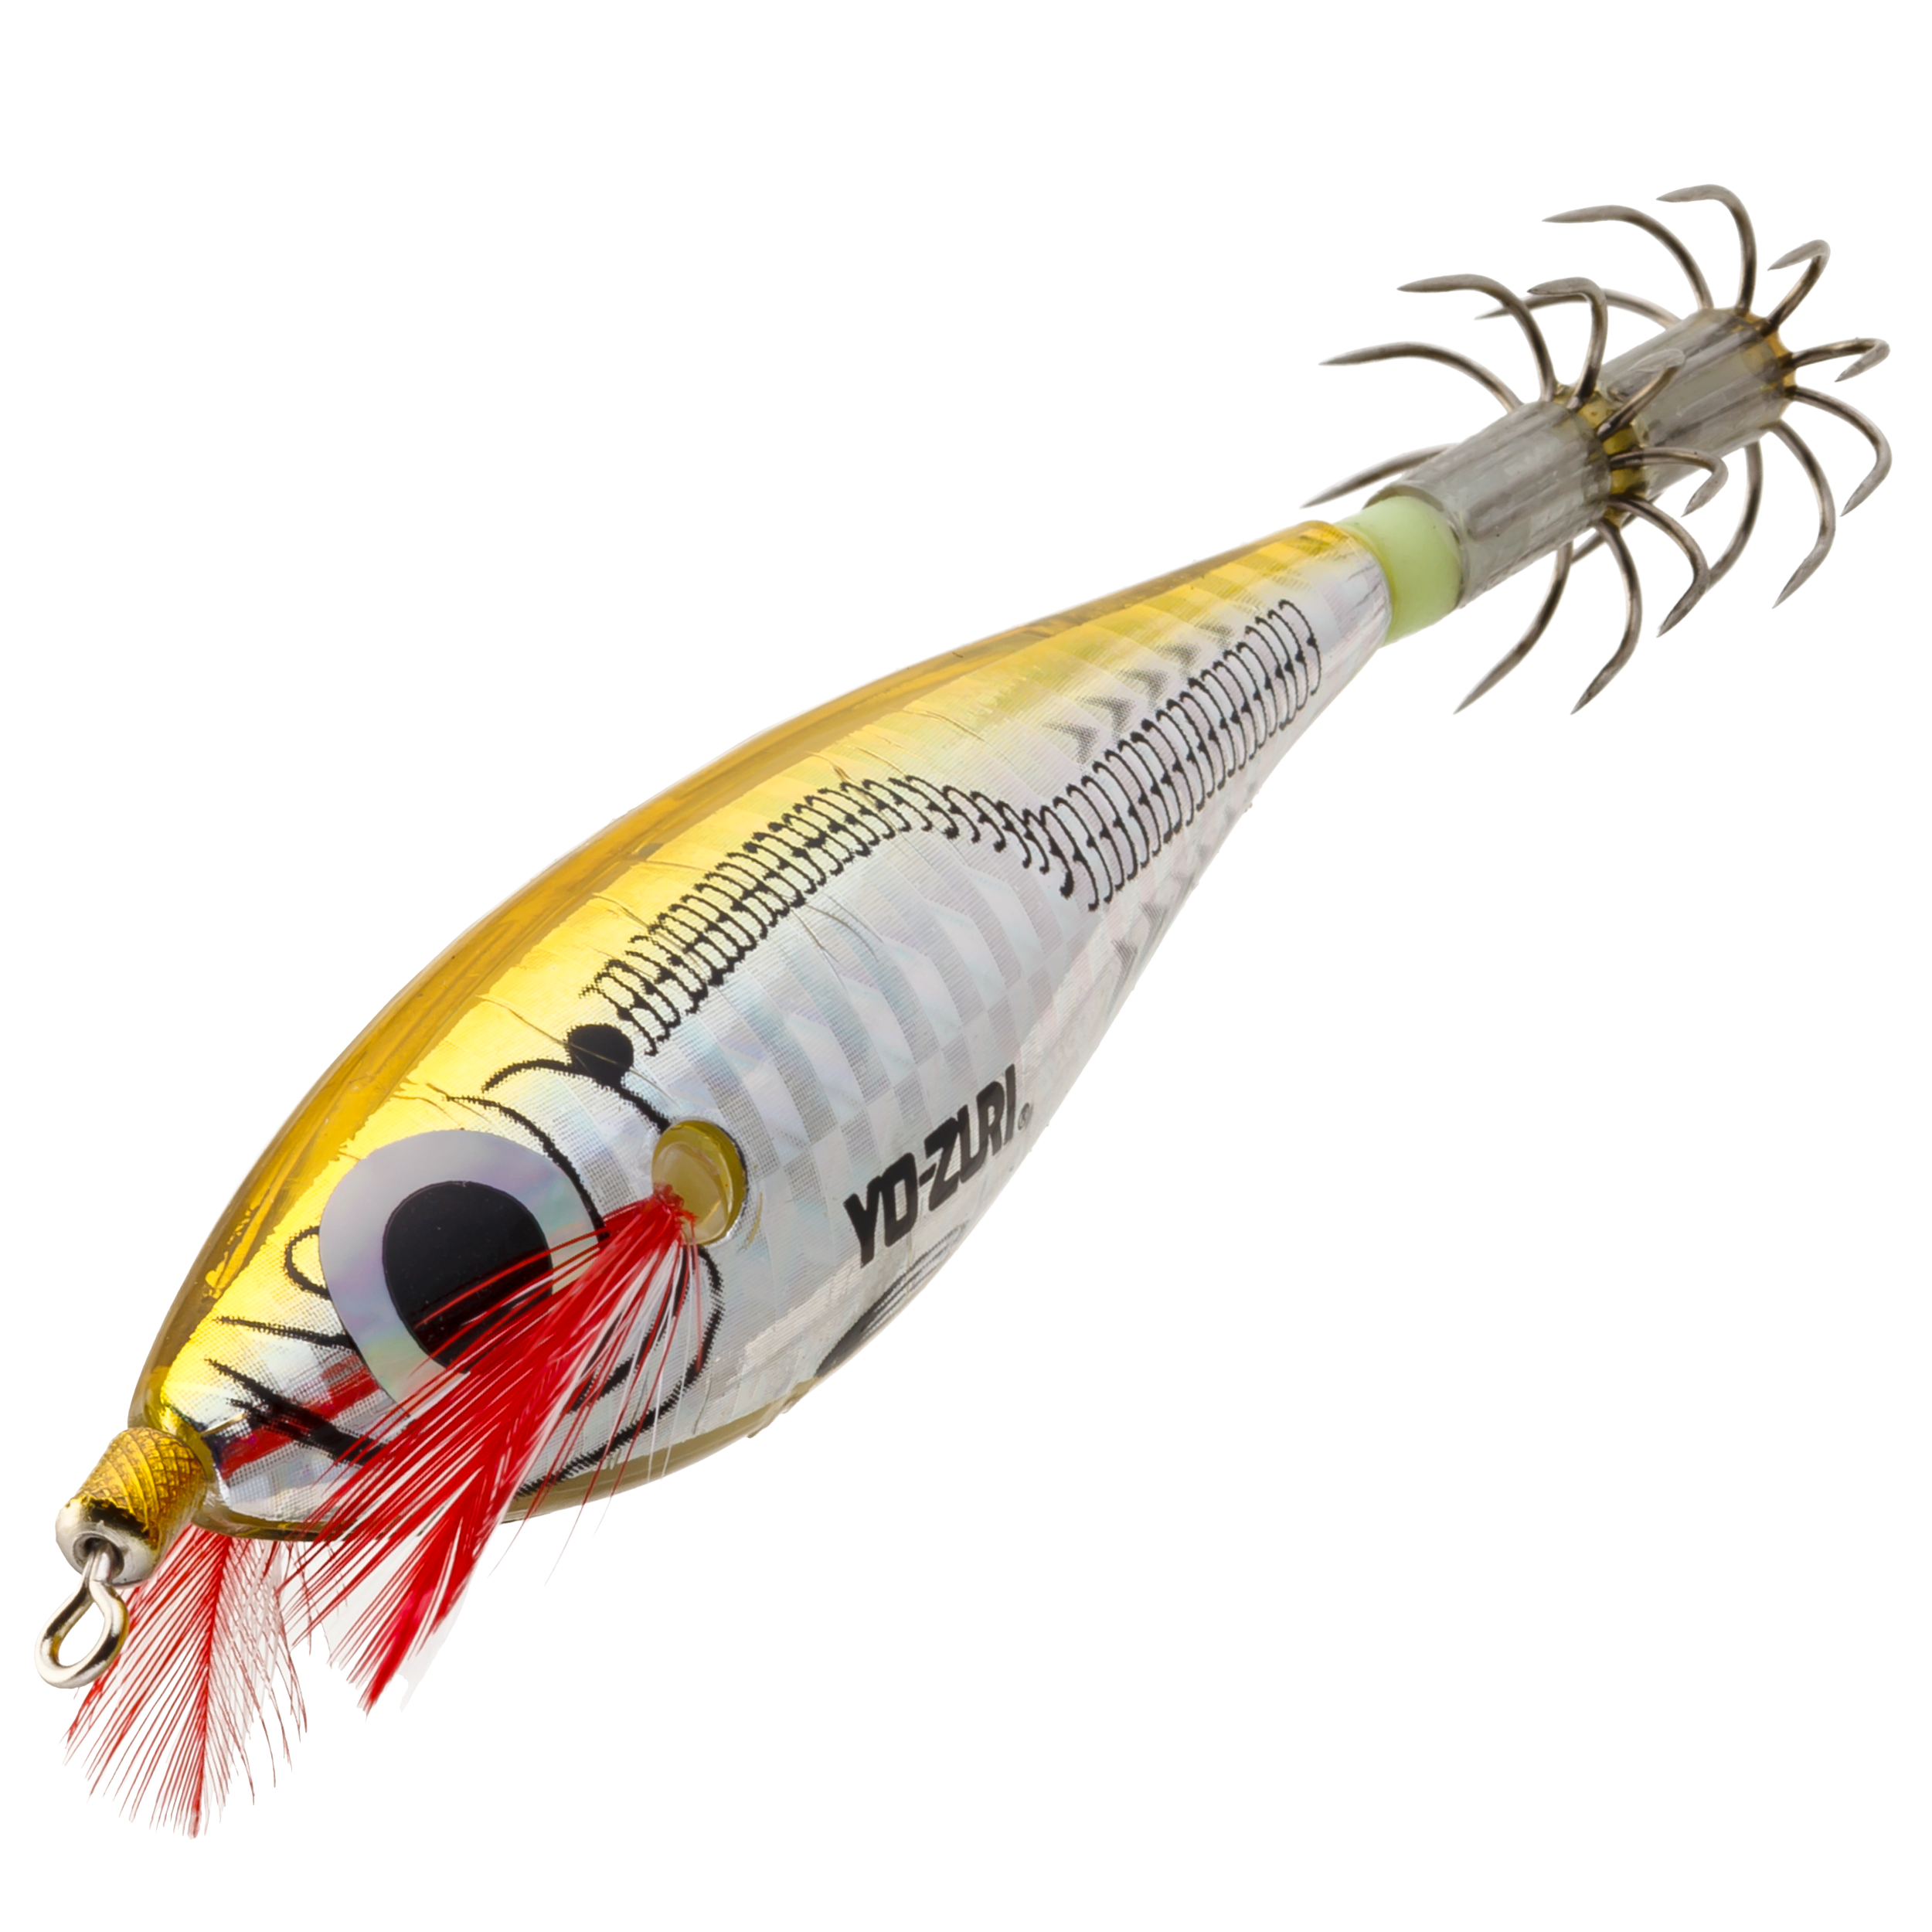 Yo-Zuri Ultra Laser Squid Jig